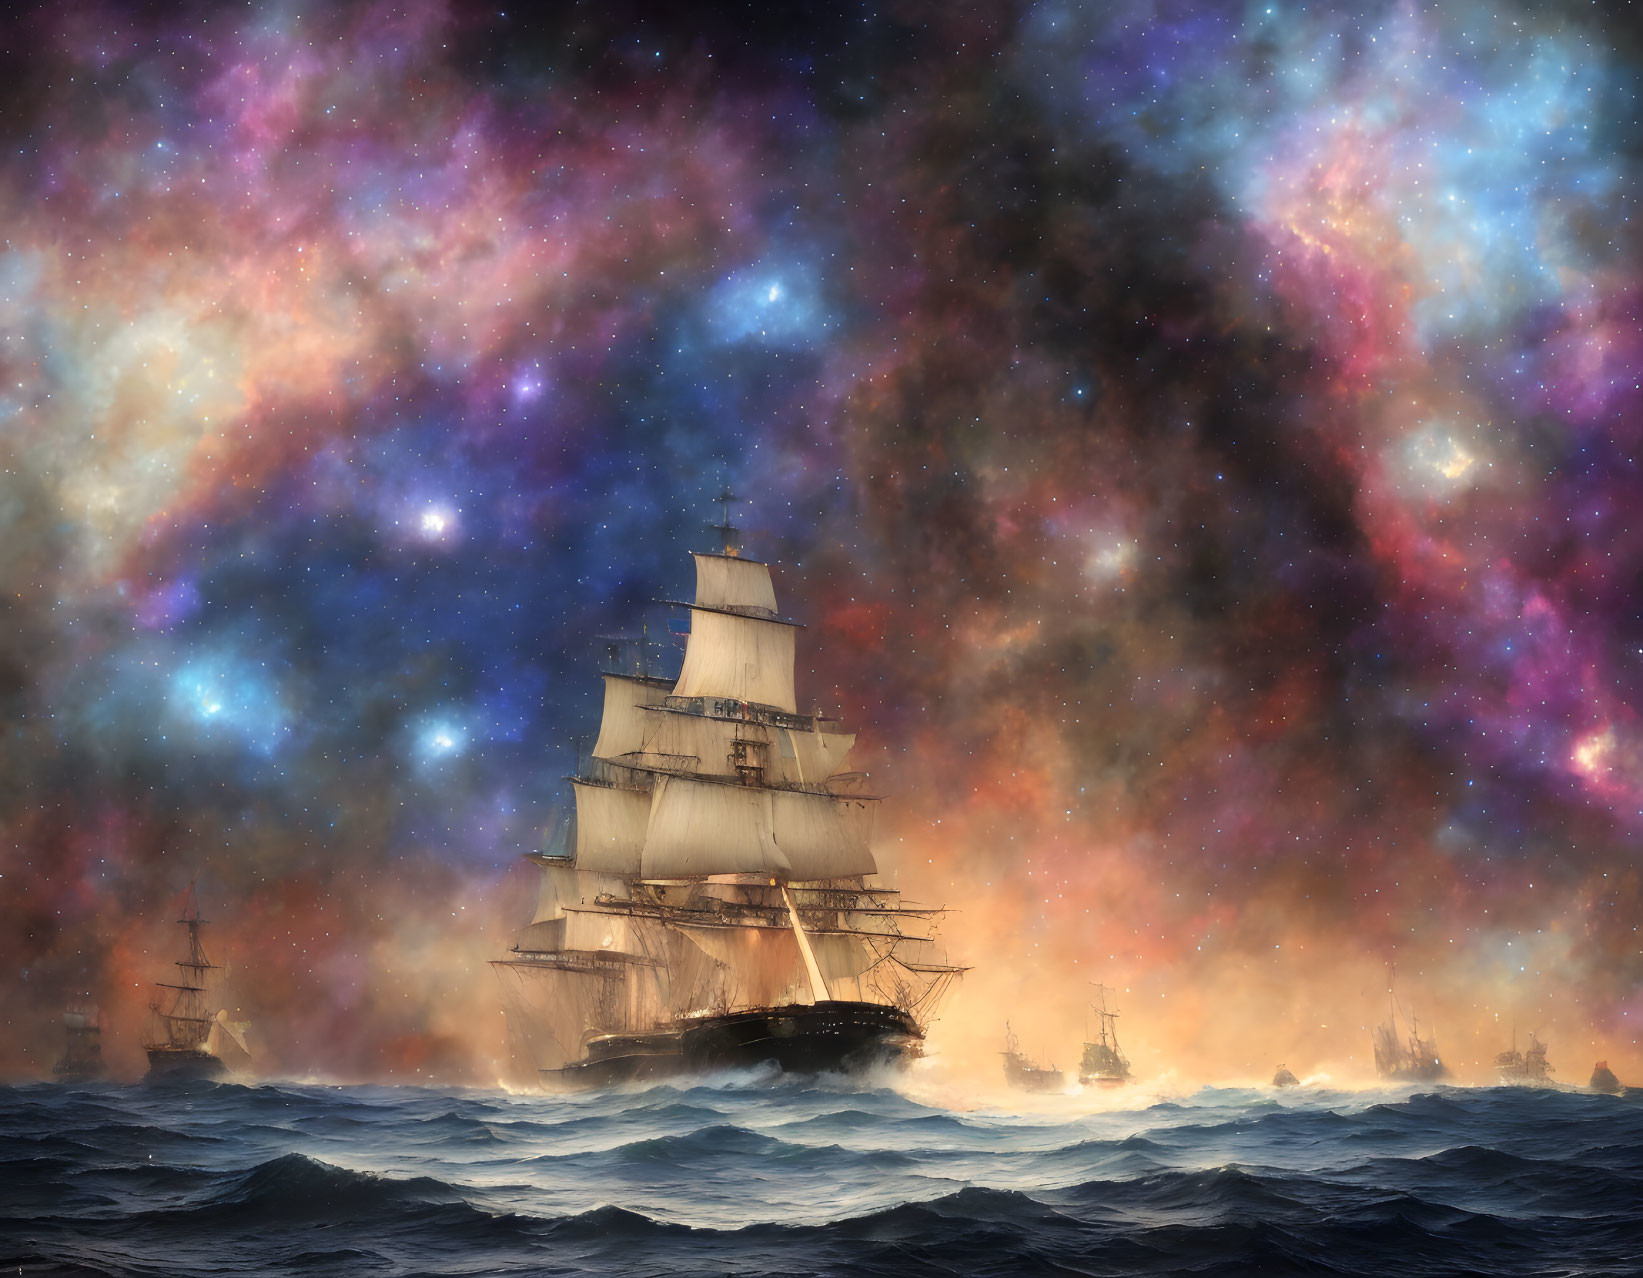 Tall ship sailing through cosmic ocean waves